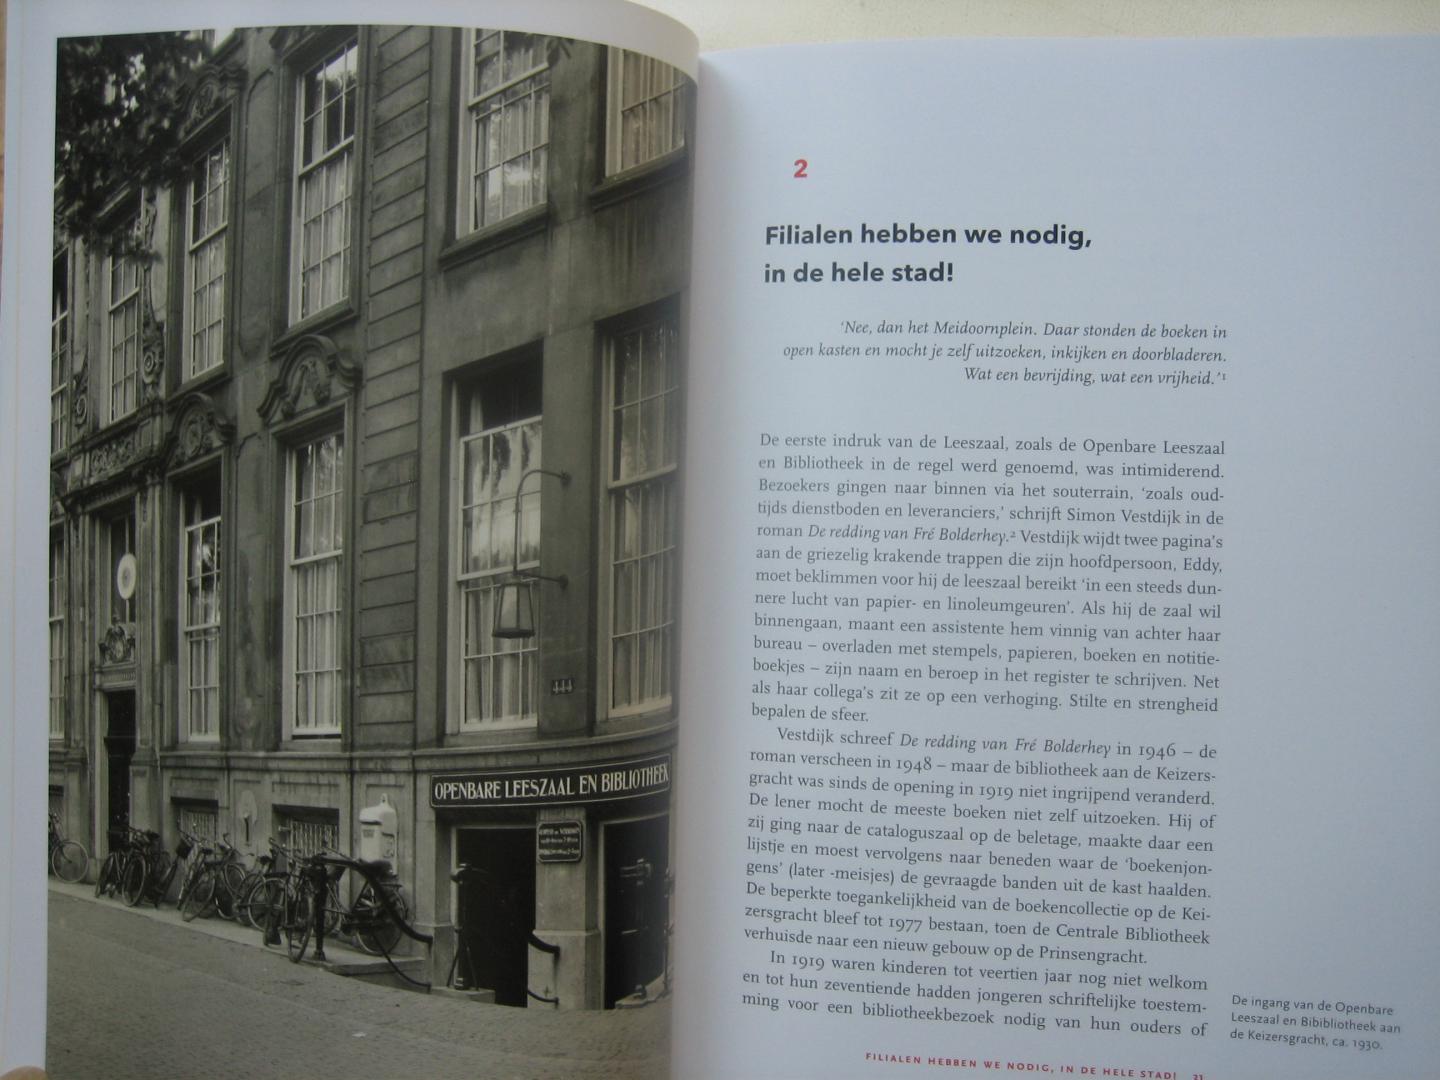 Lakmaker, Joosje, Veldkamp, Elke - Amsterdammers en hun bibliotheek / OBA: 1919-2019